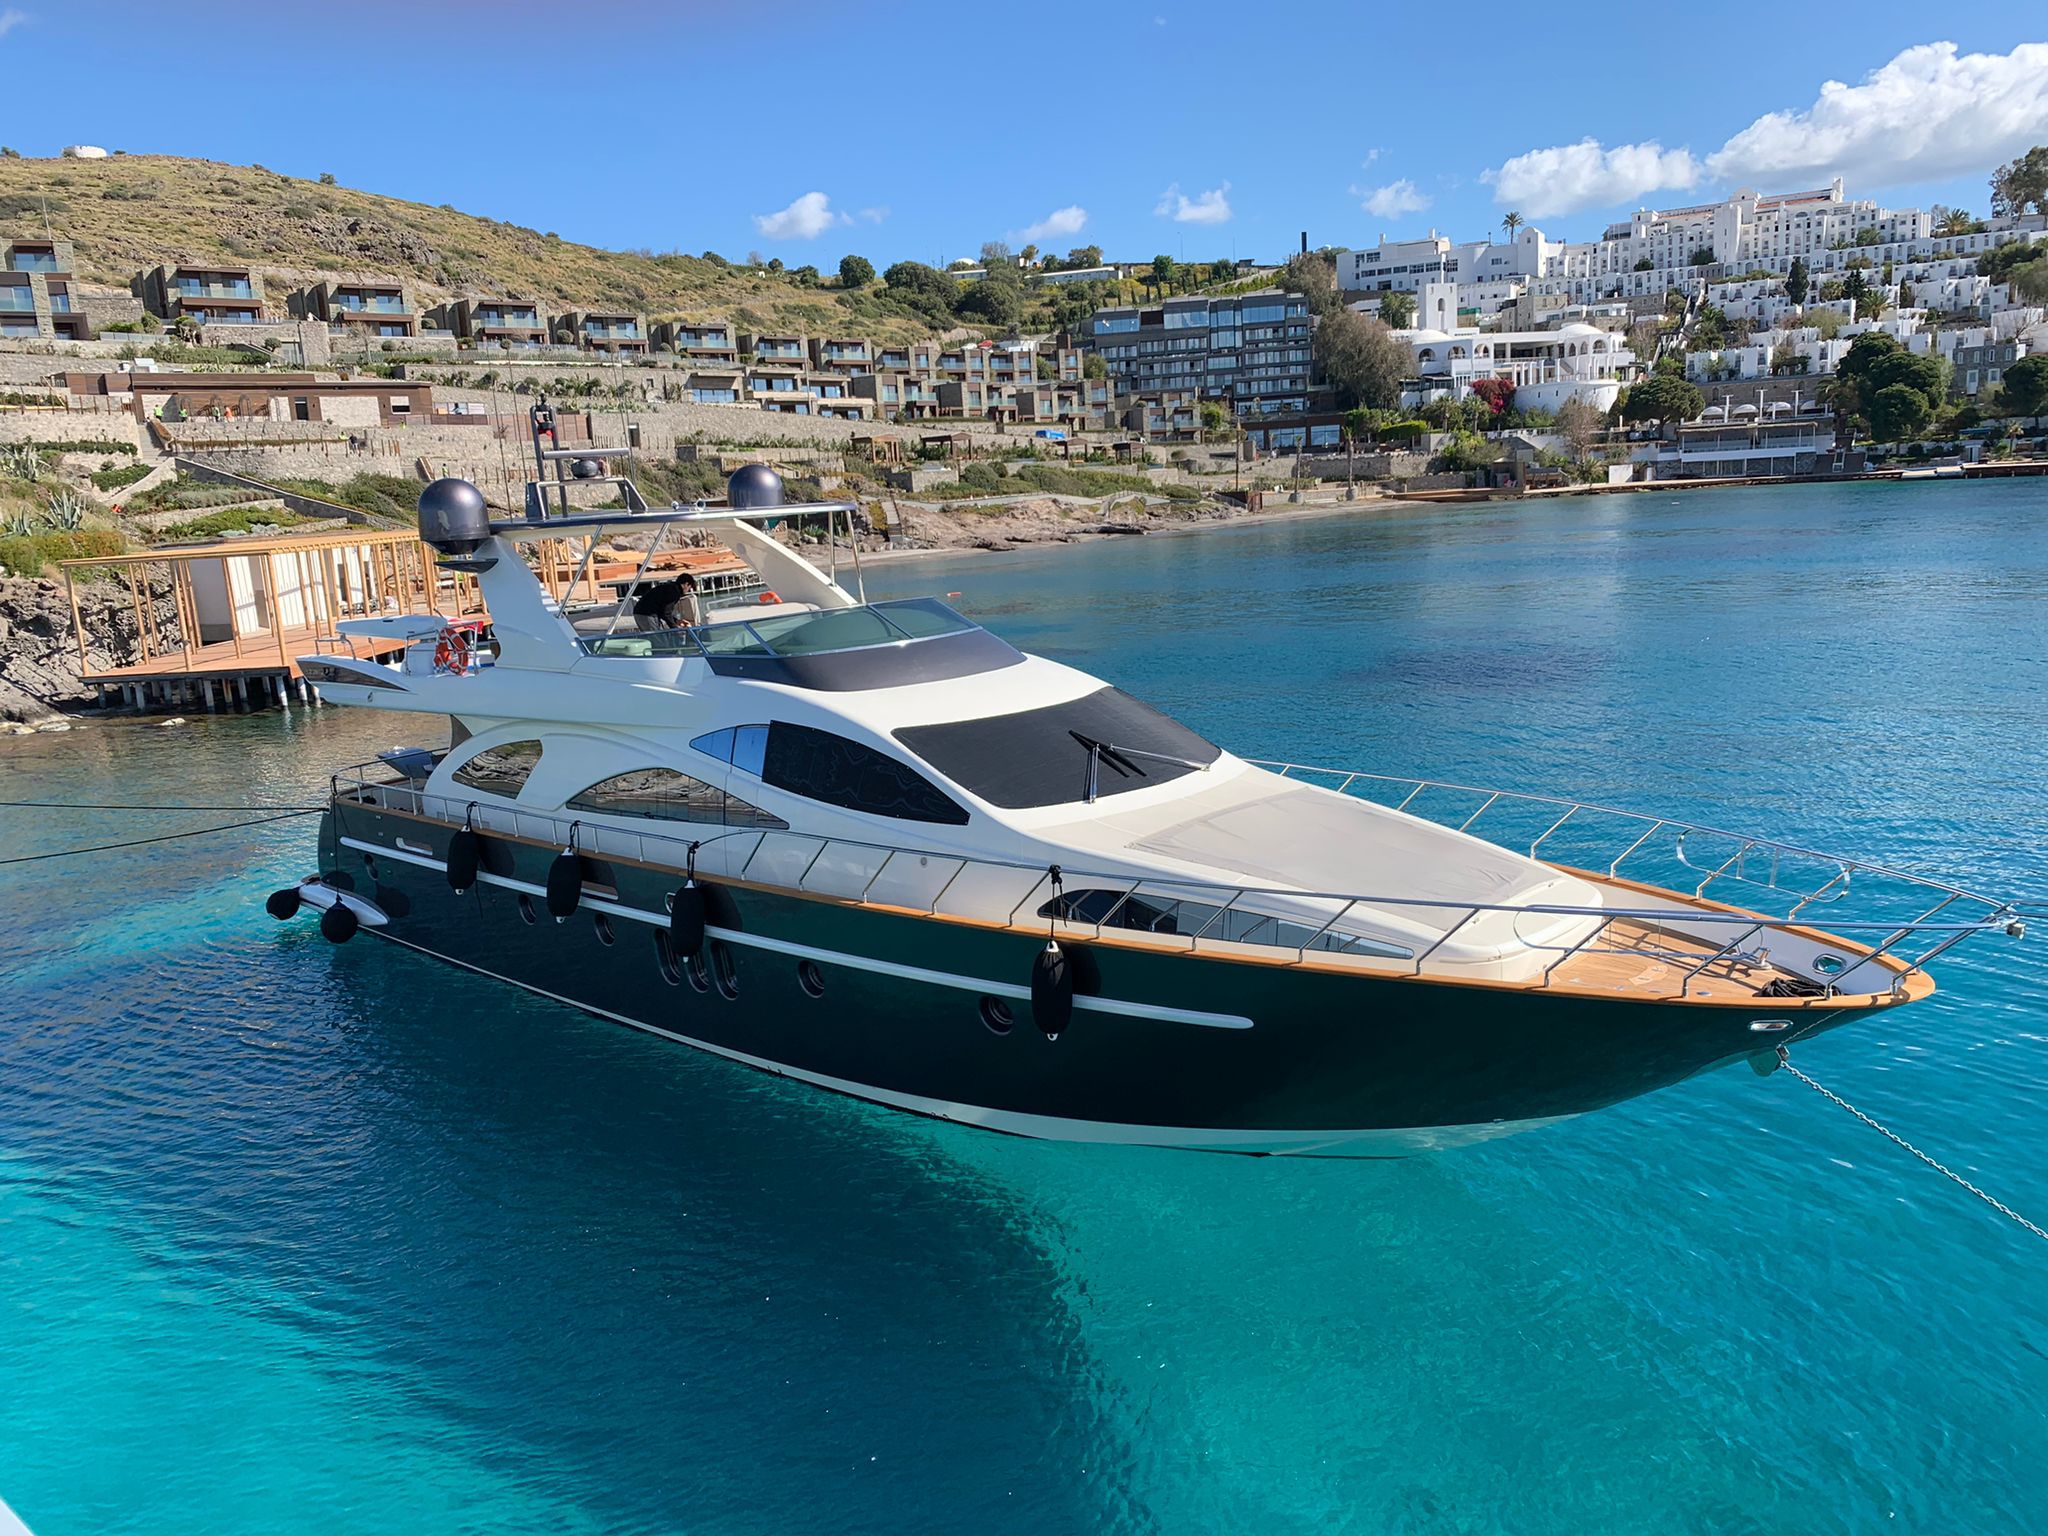 Azimut 80 - Superyacht charter Saint Lucia & Boat hire in Greece Cyclades Islands Mykonos Mykonos 2